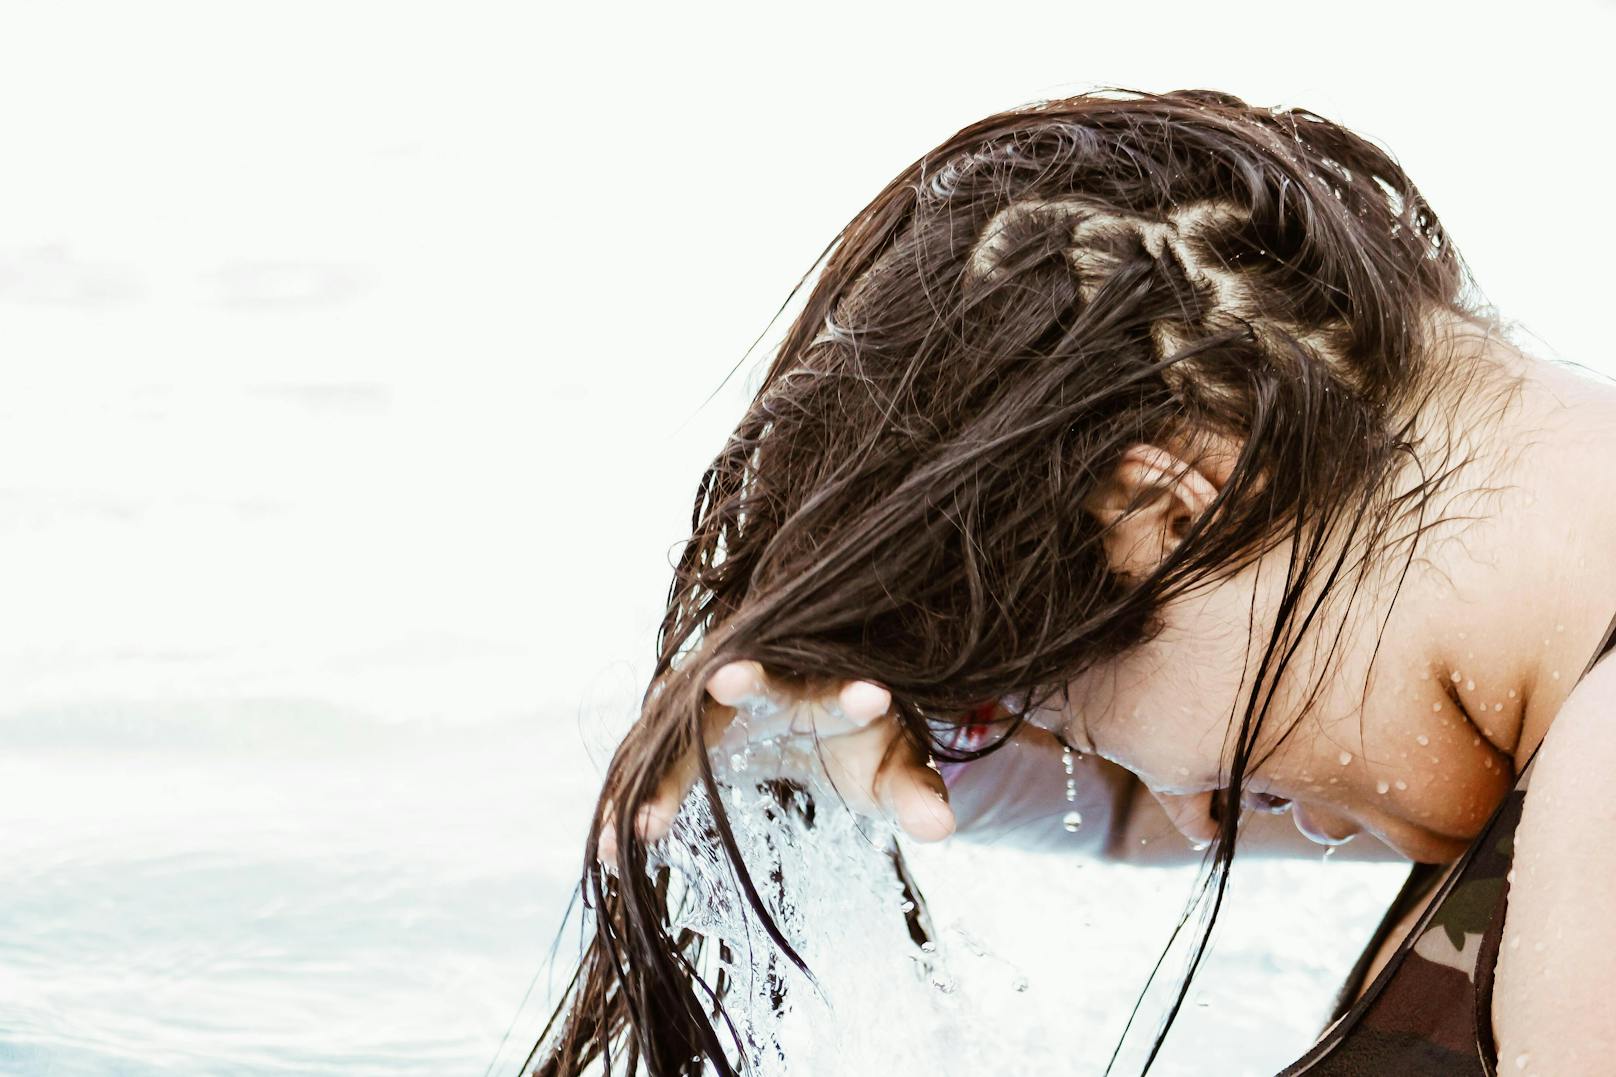 Werden die Haare nur mit klarem Wasser gewaschen, kann das schlecht für die Kopfhaut sein.